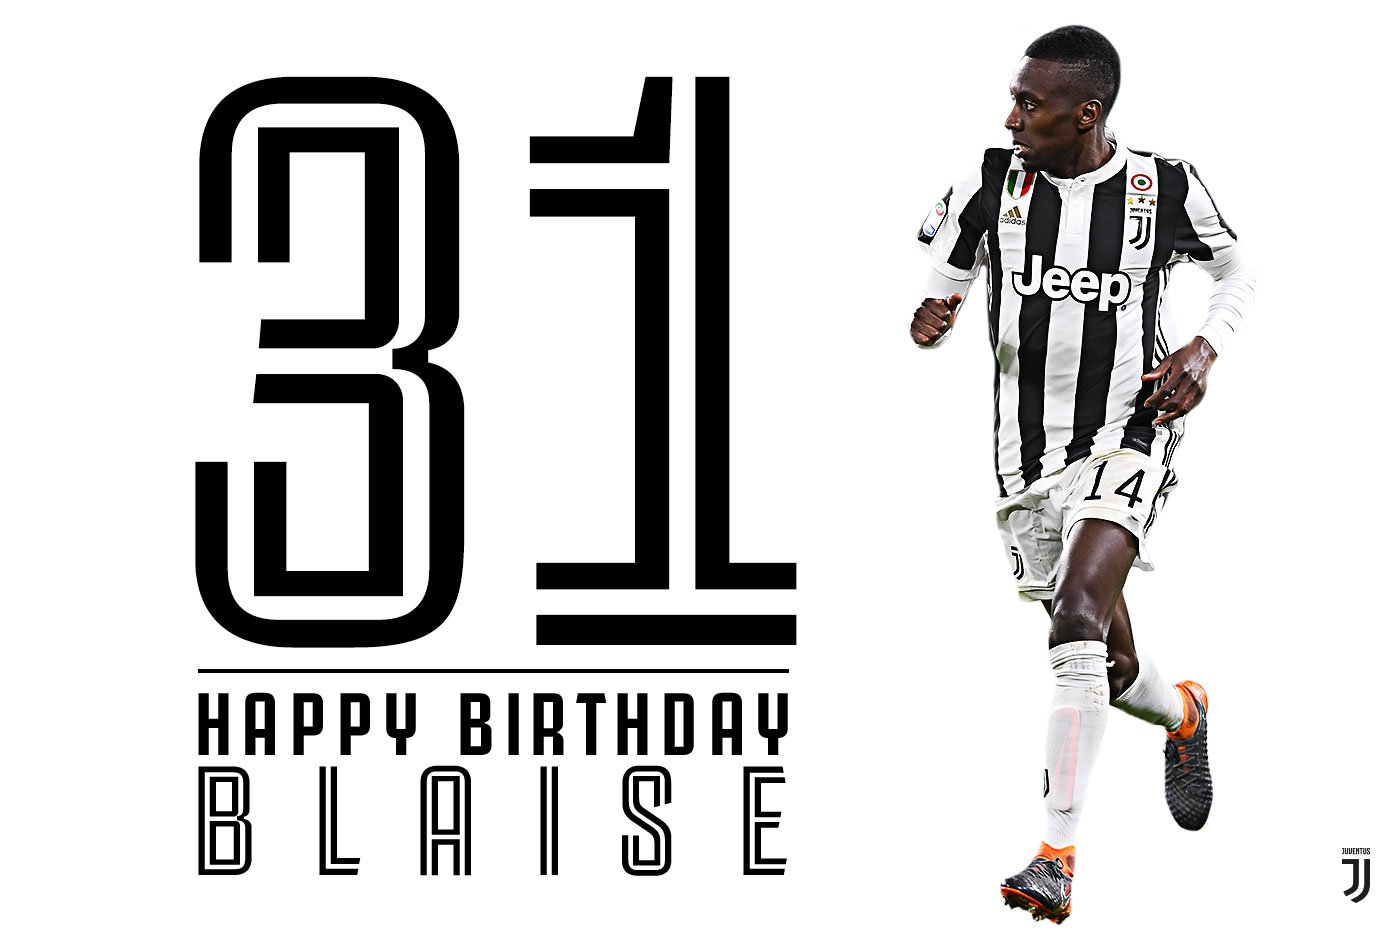 Team:Bon anniversaire, Blaise  